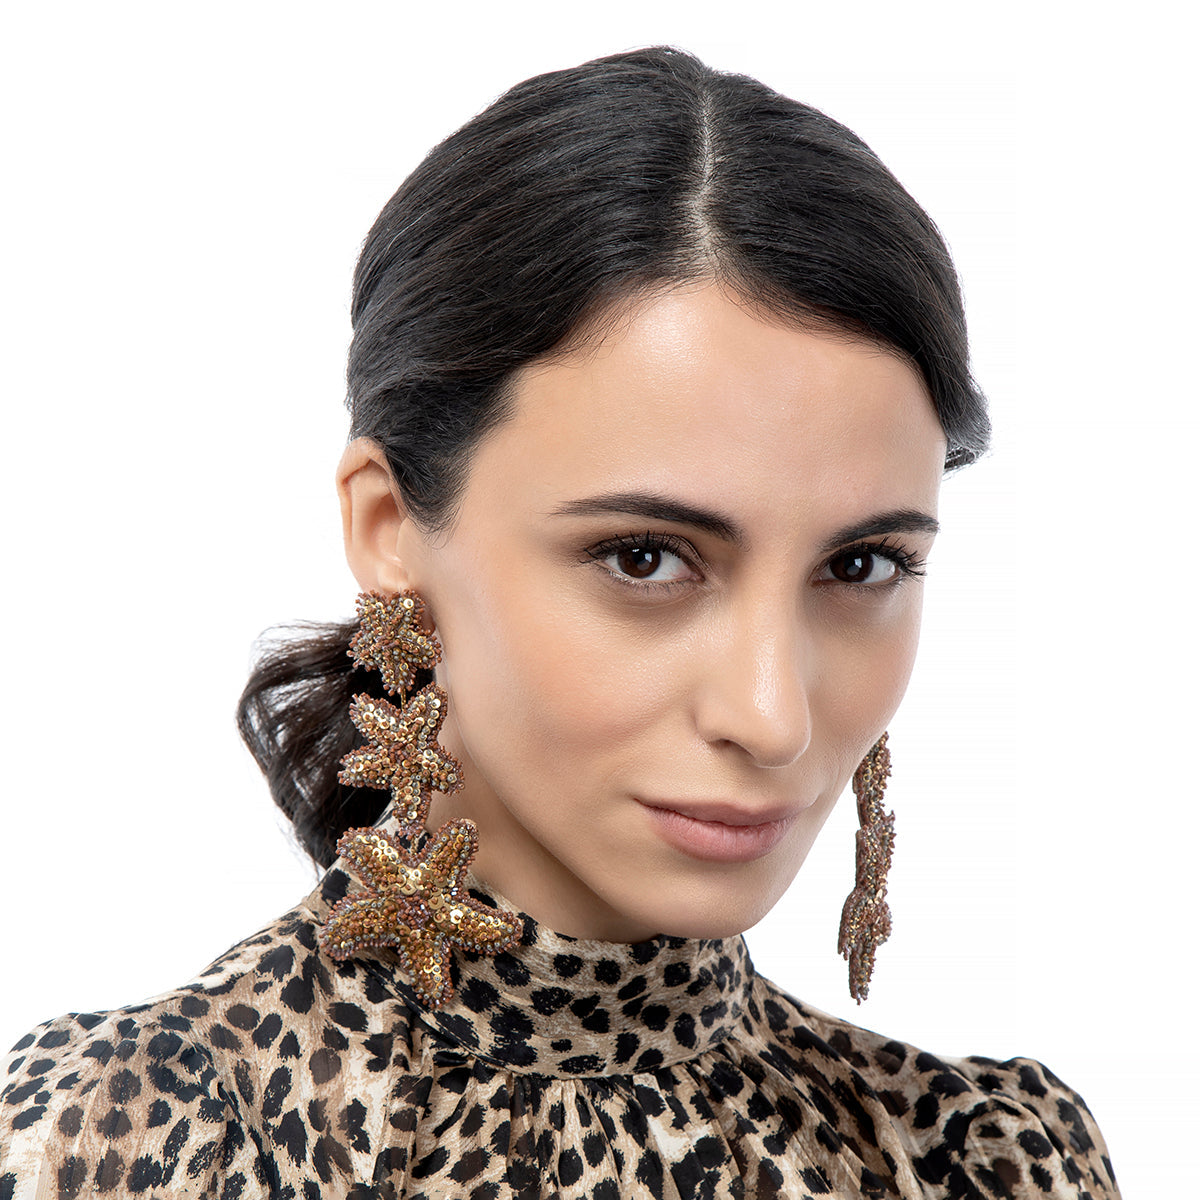 Model wearing Marina Earrings